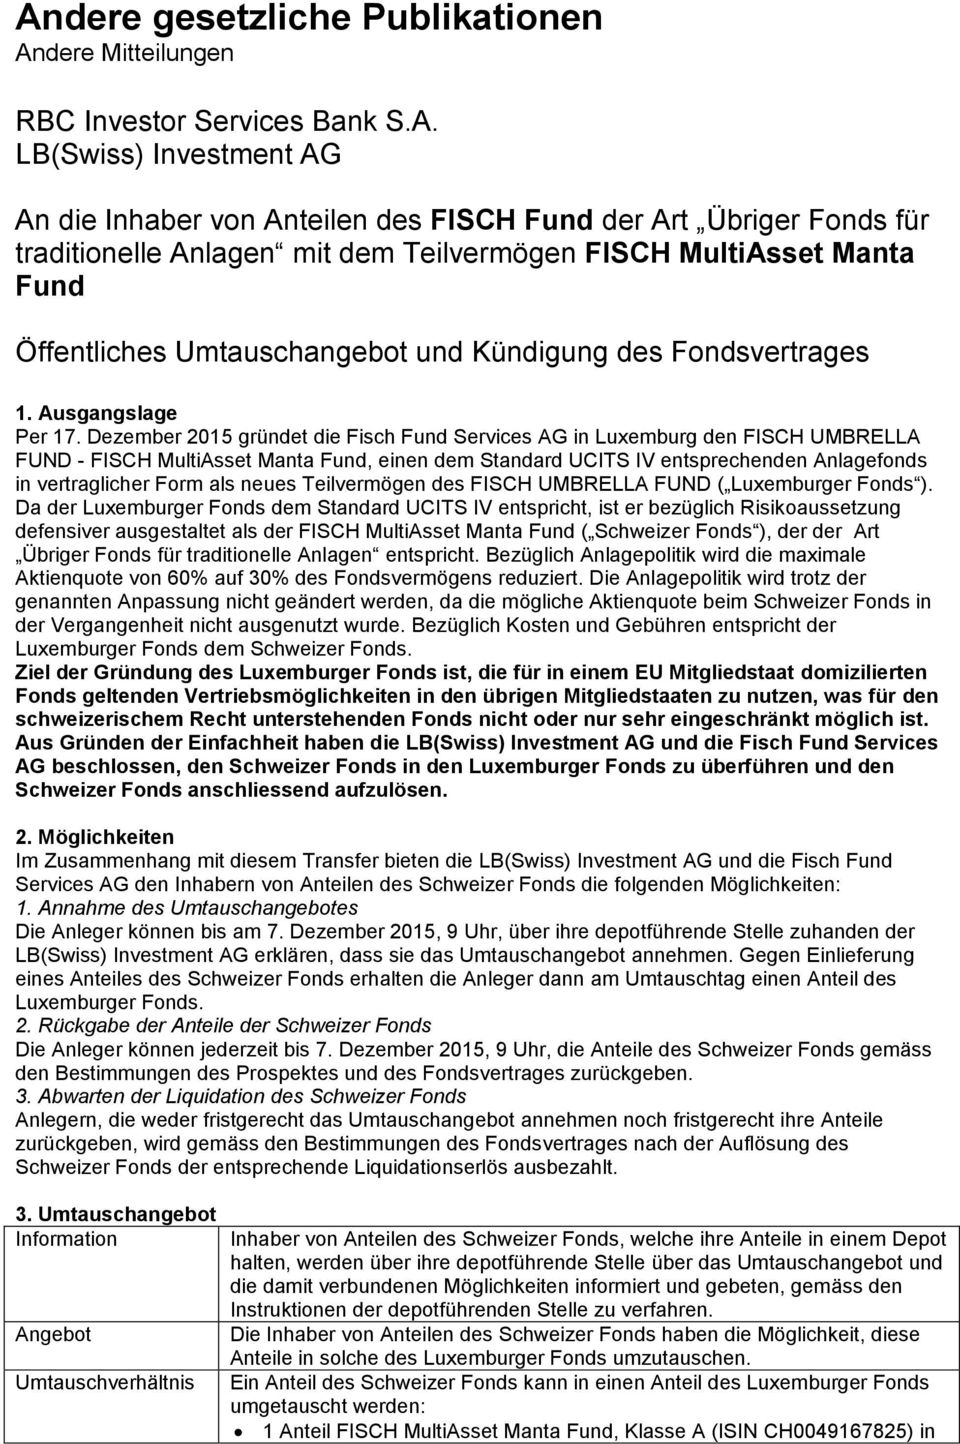 Dezember 2015 gründet die Fisch Fund Services AG in Luxemburg den FISCH UMBRELLA FUND - FISCH MultiAsset Manta Fund, einen dem Standard UCITS IV entsprechenden Anlagefonds in vertraglicher Form als